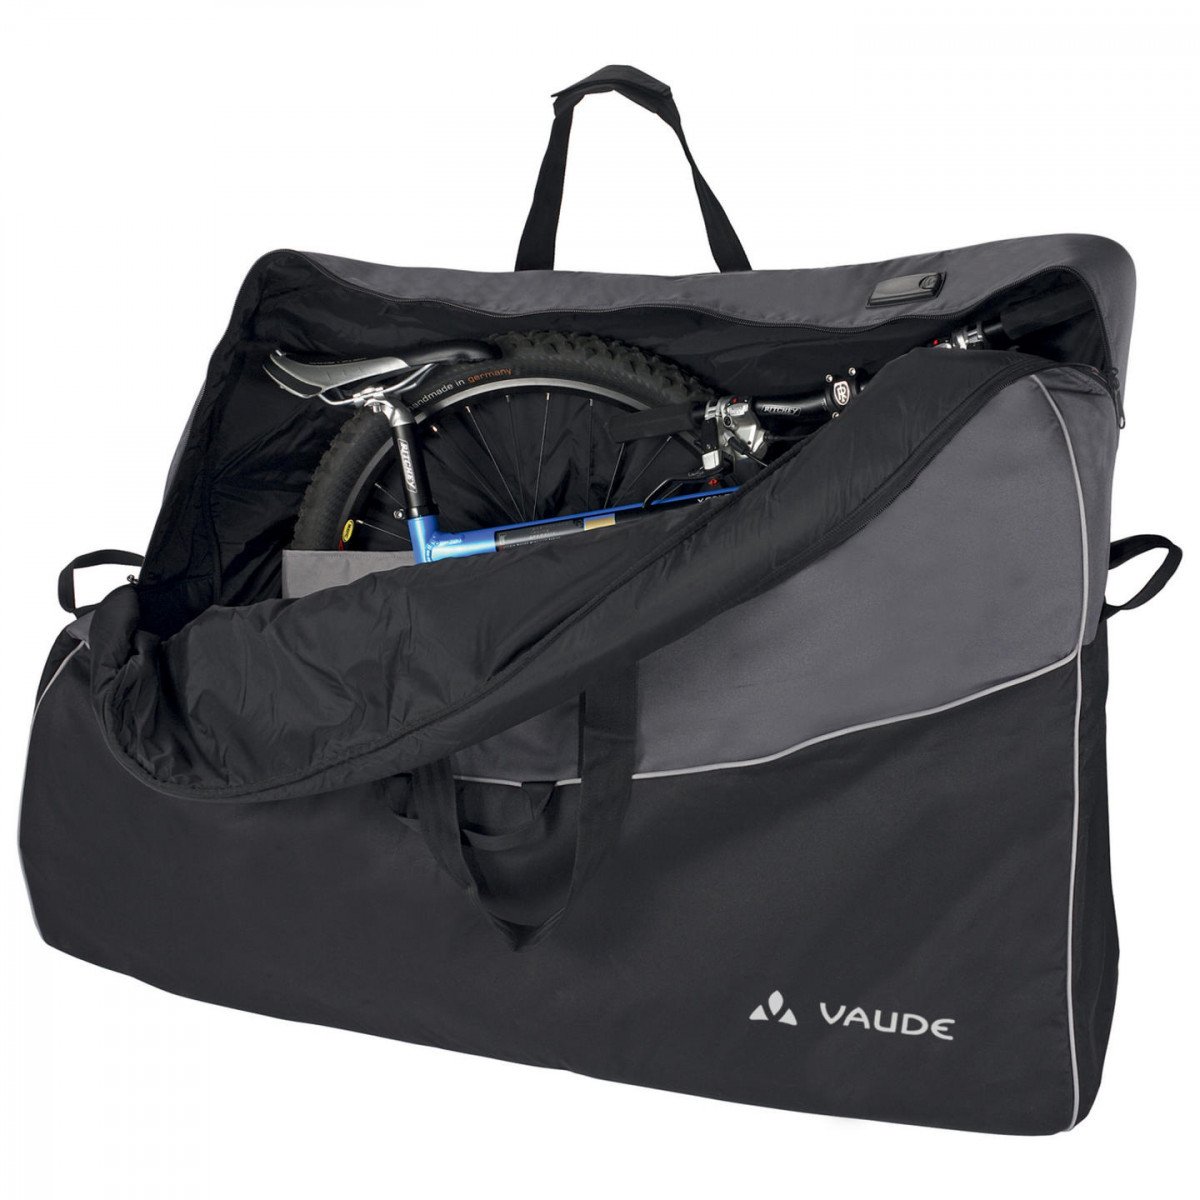 фото Велосипедная сумка vaude big bike bag pro сумка транспортировочная, размеры: 85x130x28см, 15257